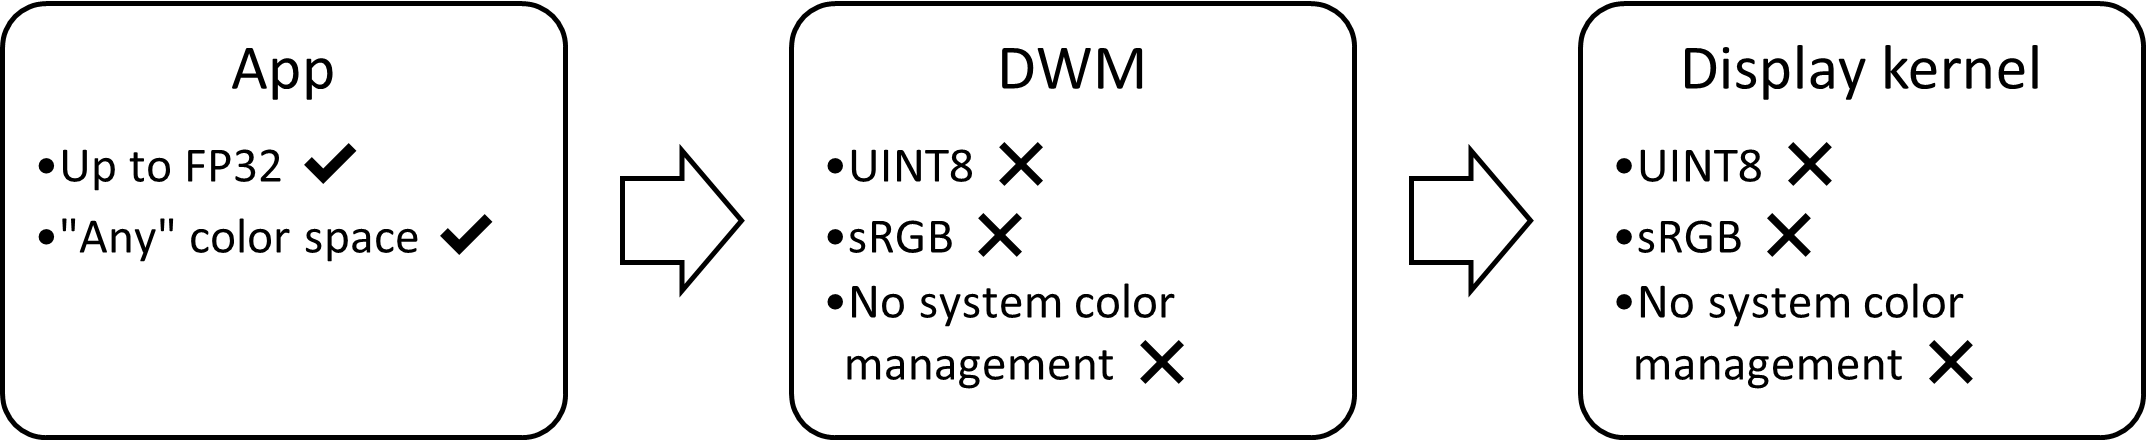 diagrama de bloques de la pila de visualización de SDR: limitado a sRGB, de 8 bits, sin administración de colores